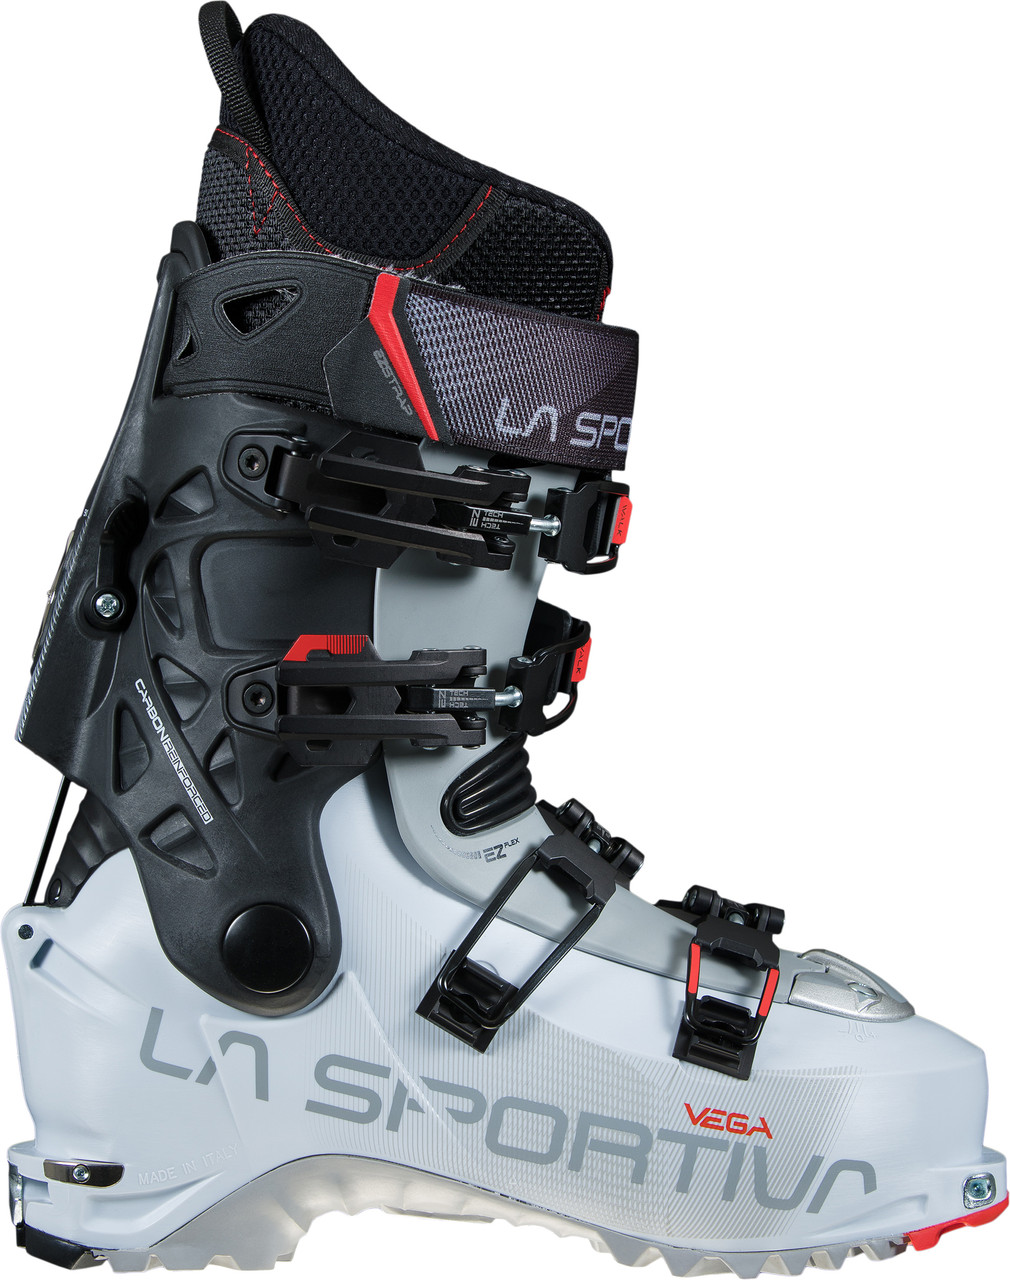 La Sportiva Vega Ski Boots - Women's $167.64 (reg. $798.95)